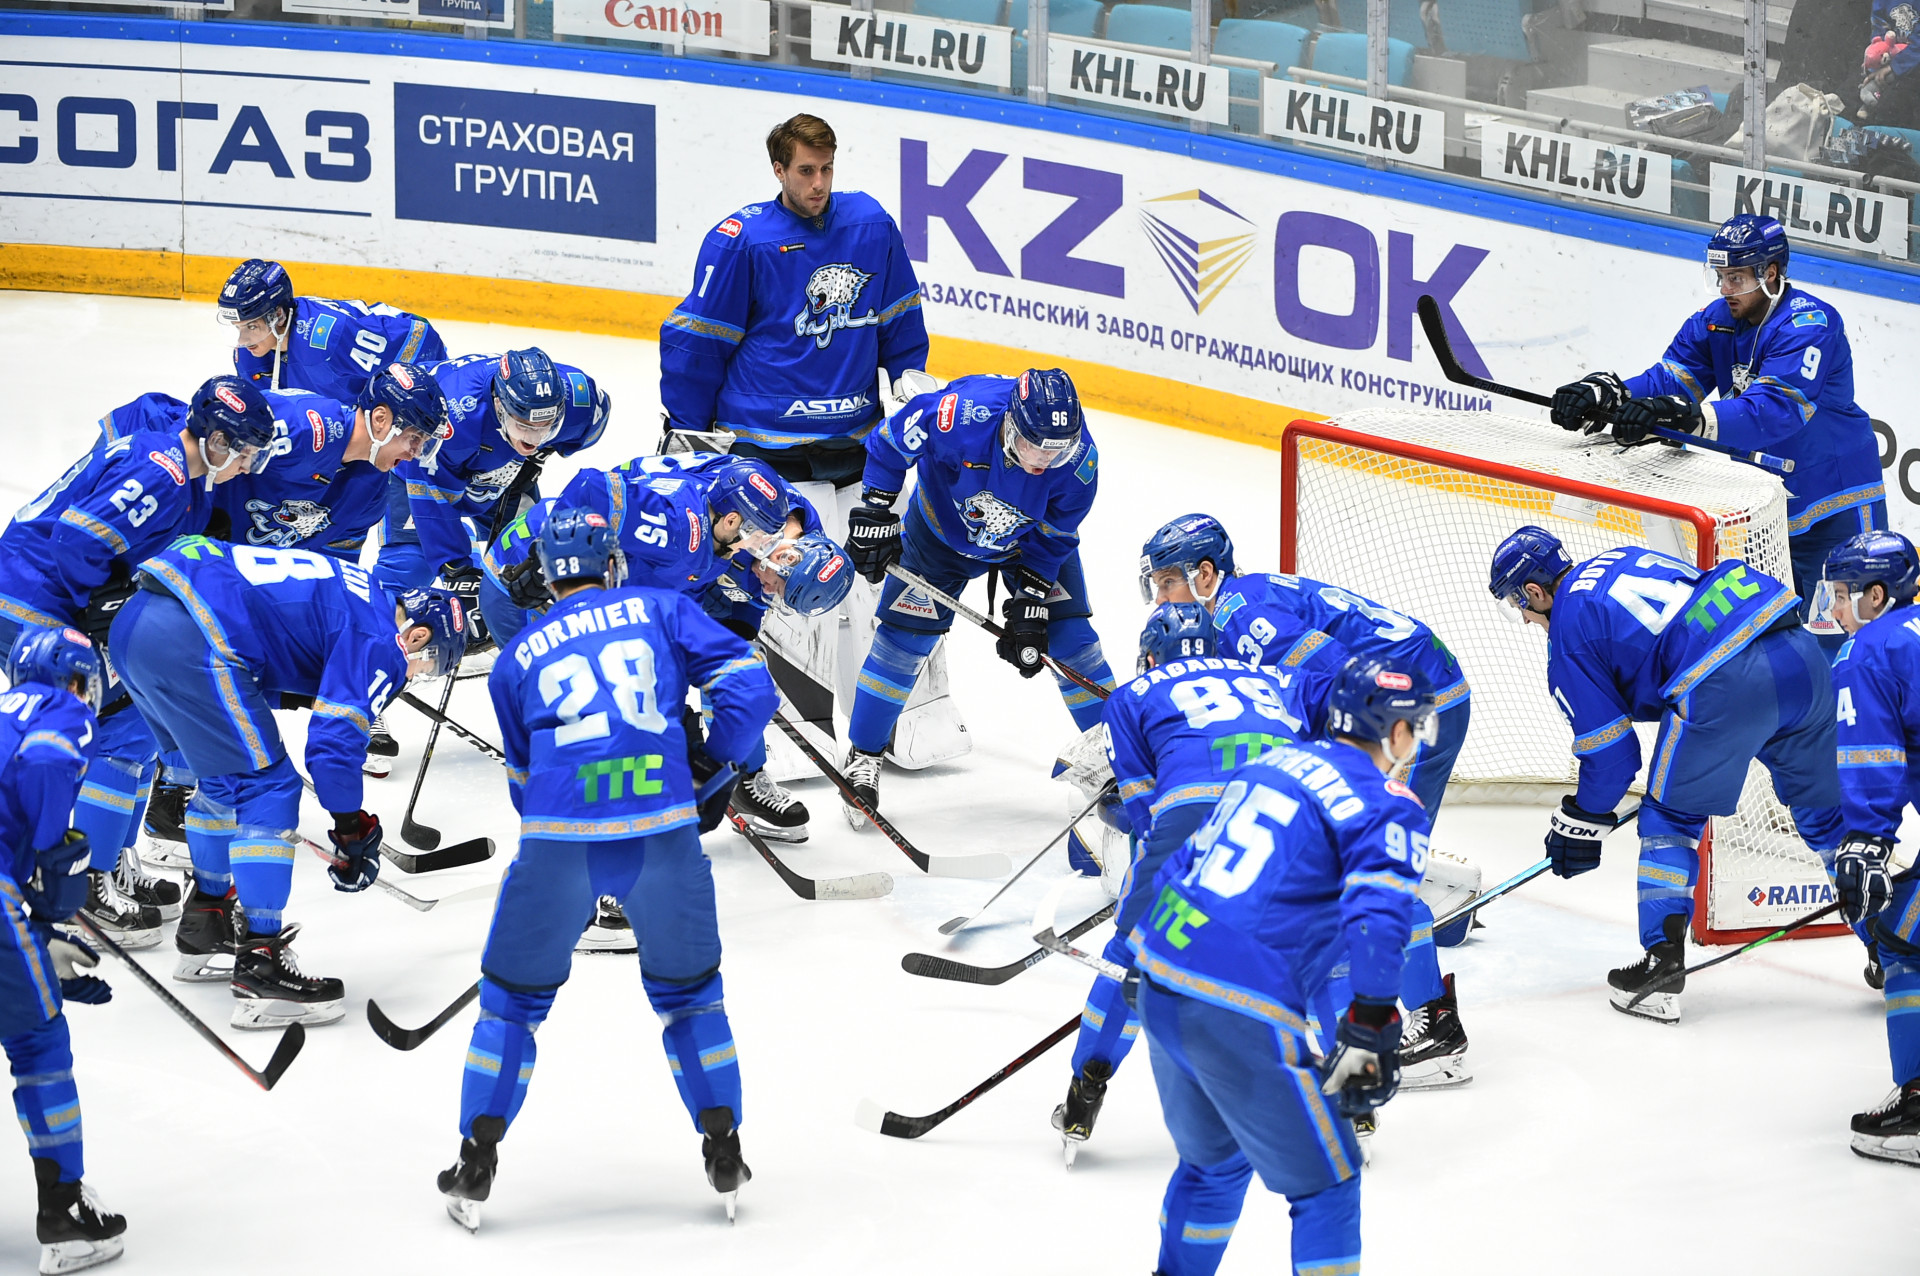 Астанинский "Барыс" до конца года в рамках Конитентальной хоккейной лиги проведёт две выездные игры 